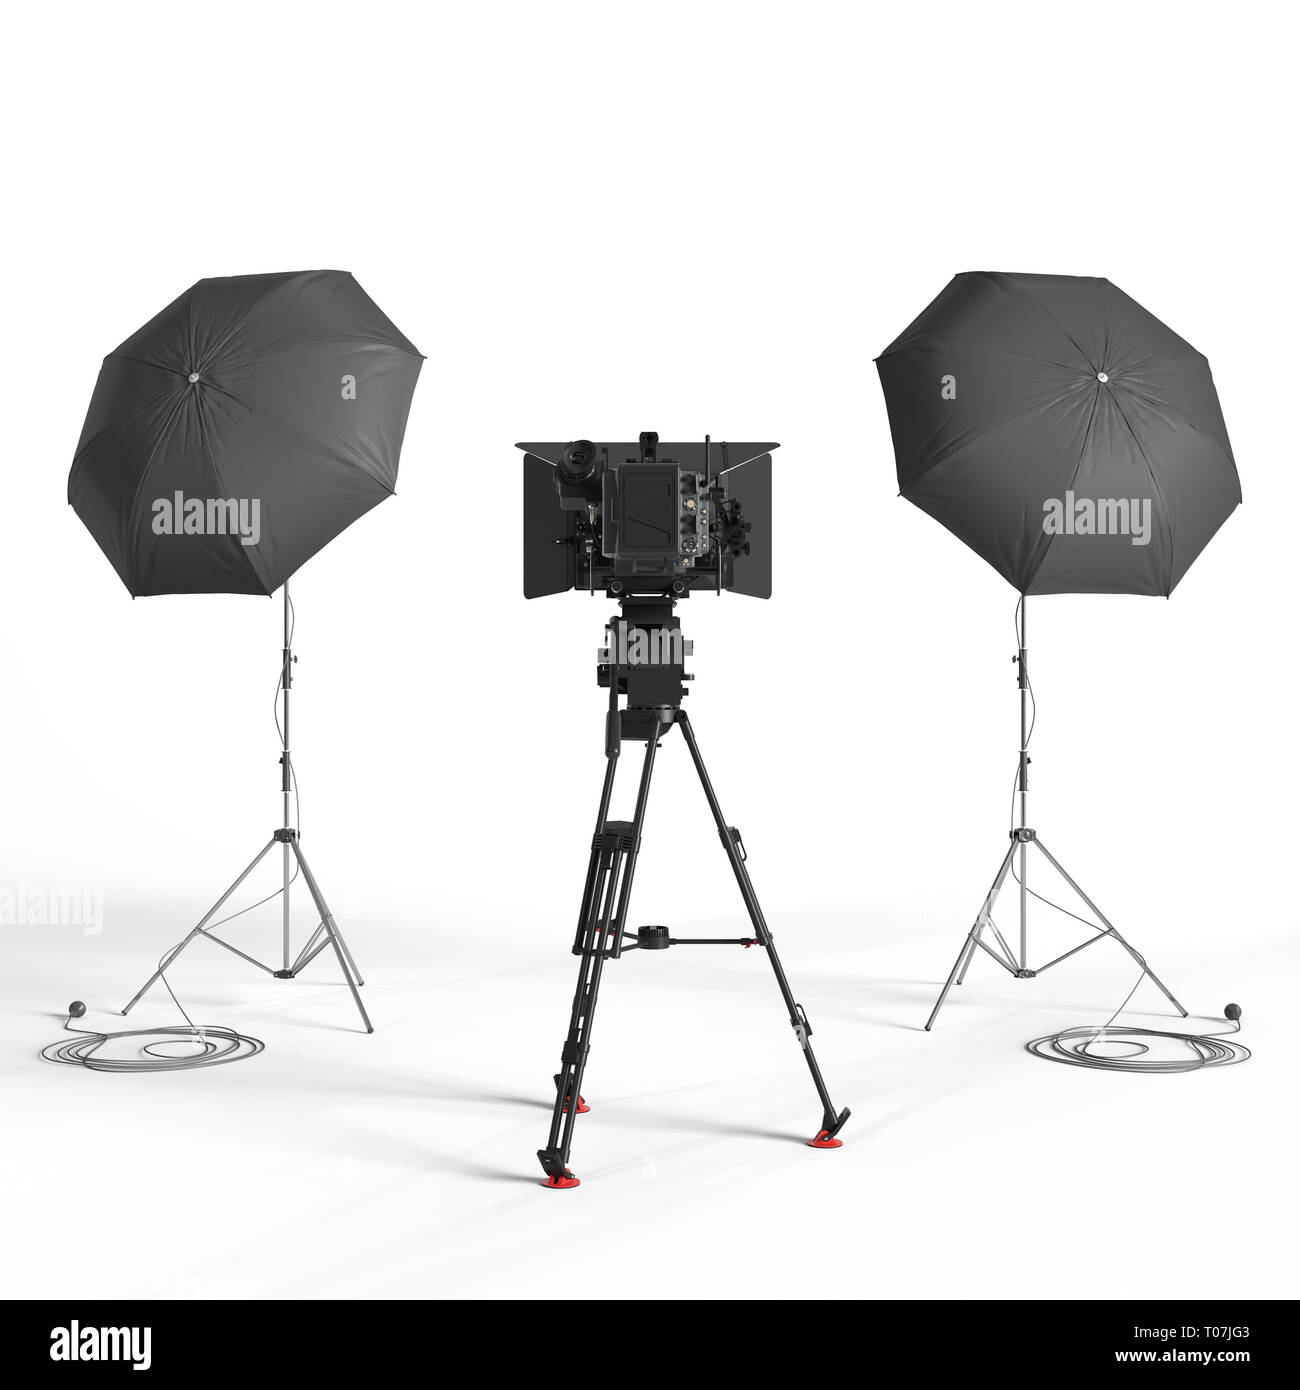 L'équipement de studio photo rendu 3d illustration isolé Banque D'Images